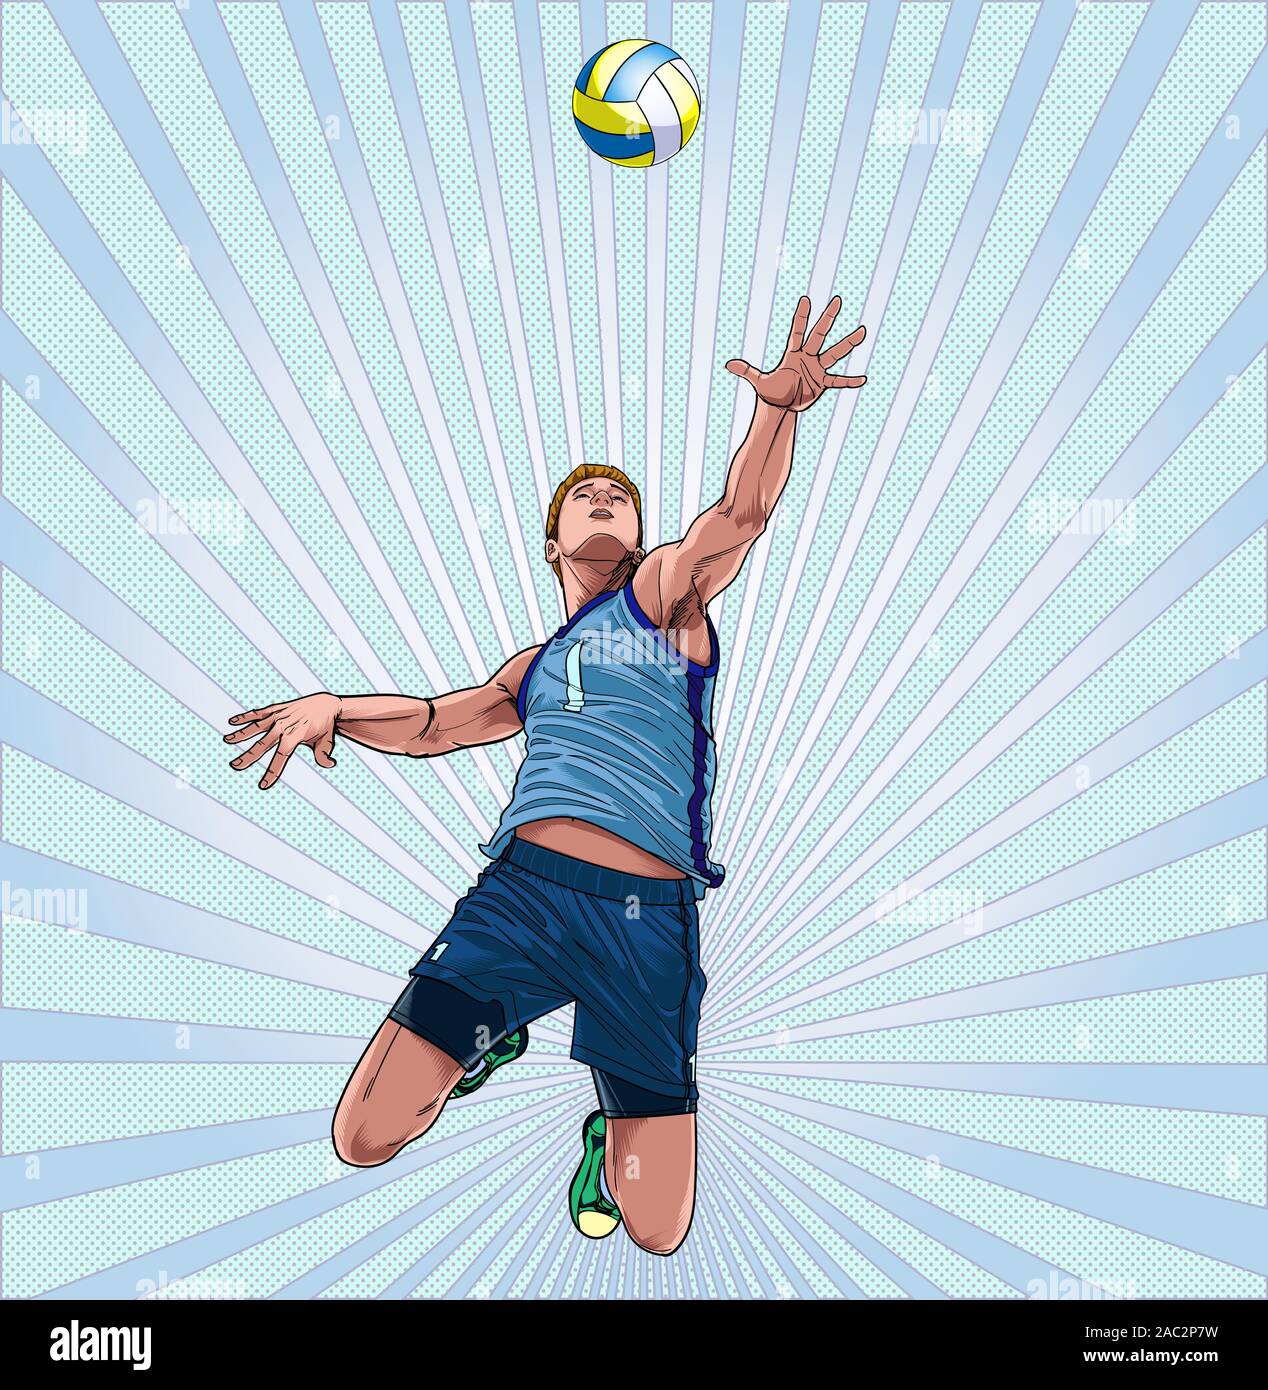 Un homme joue au volley-ball pour sauter haut que vecteur Illustration point sur le pop art style bd fond abstrait Illustration de Vecteur